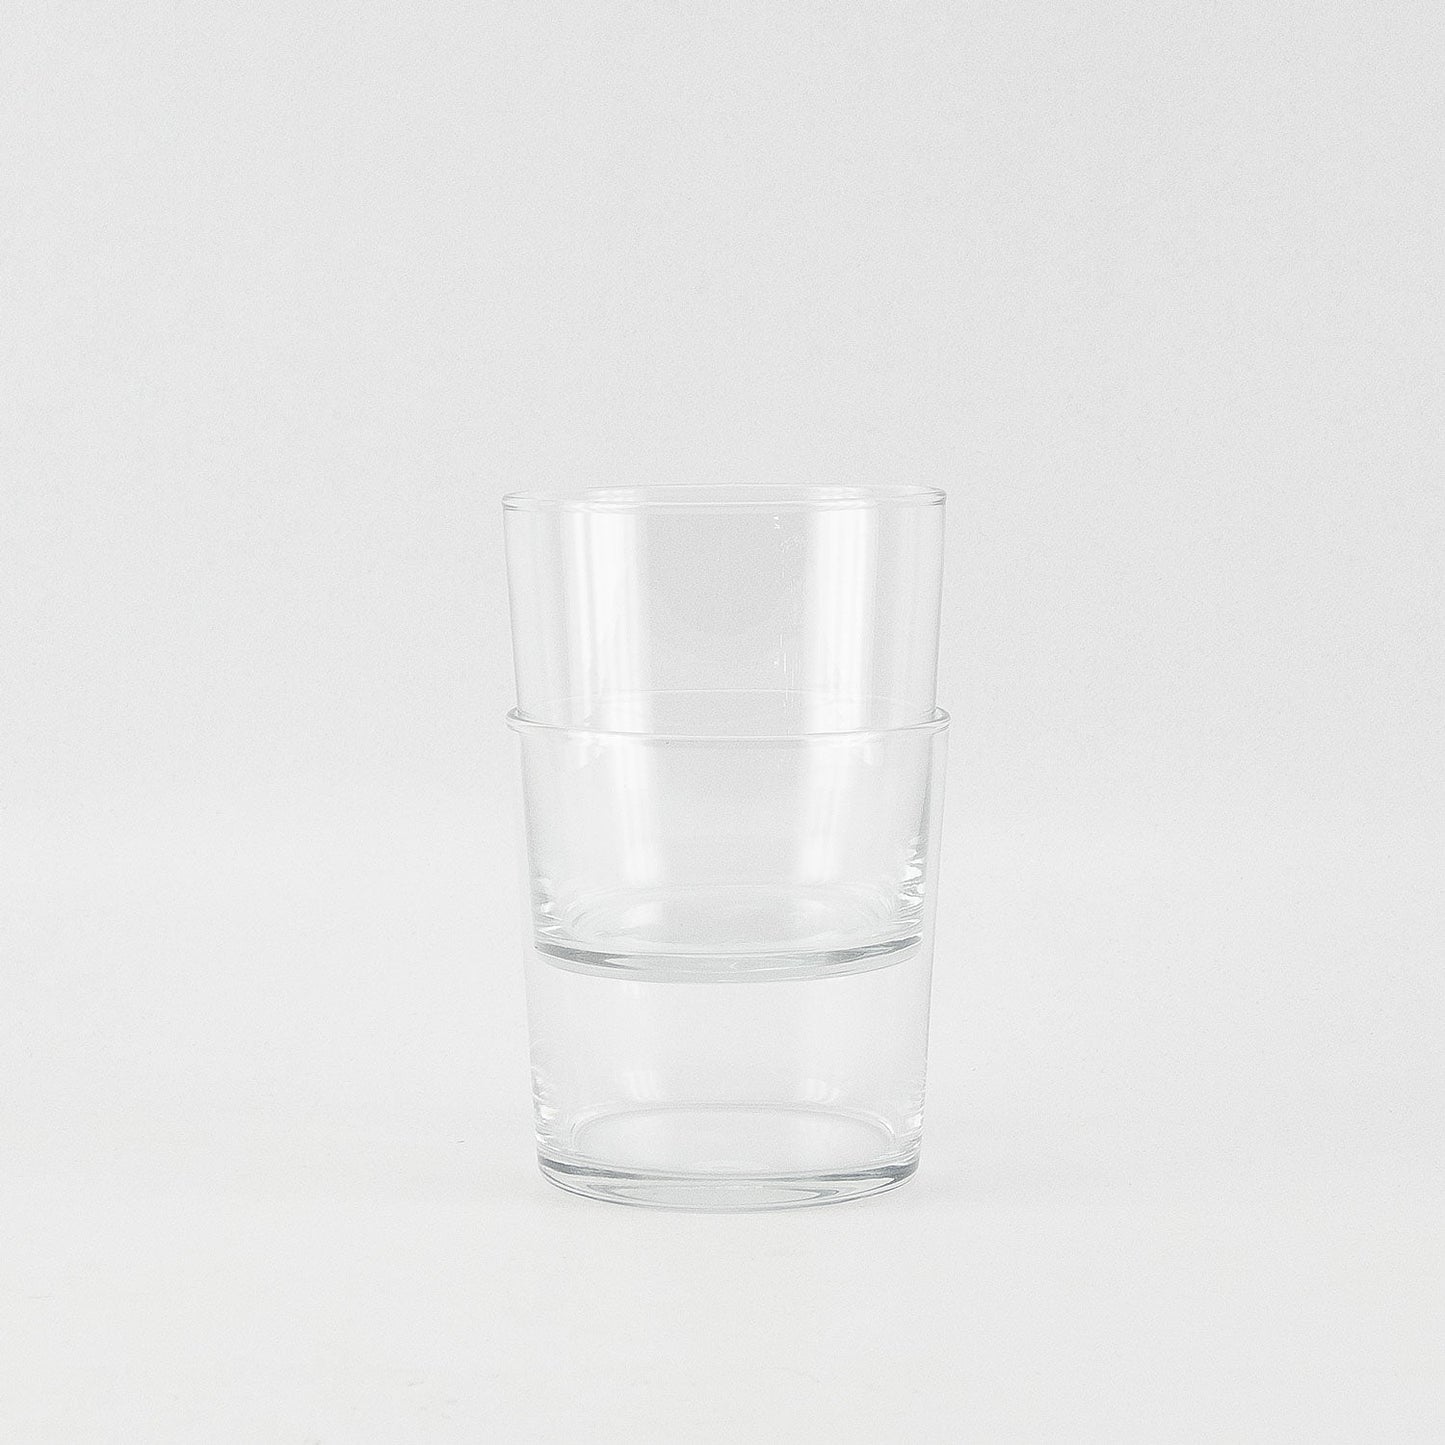 BISTRO ALTO GLASS